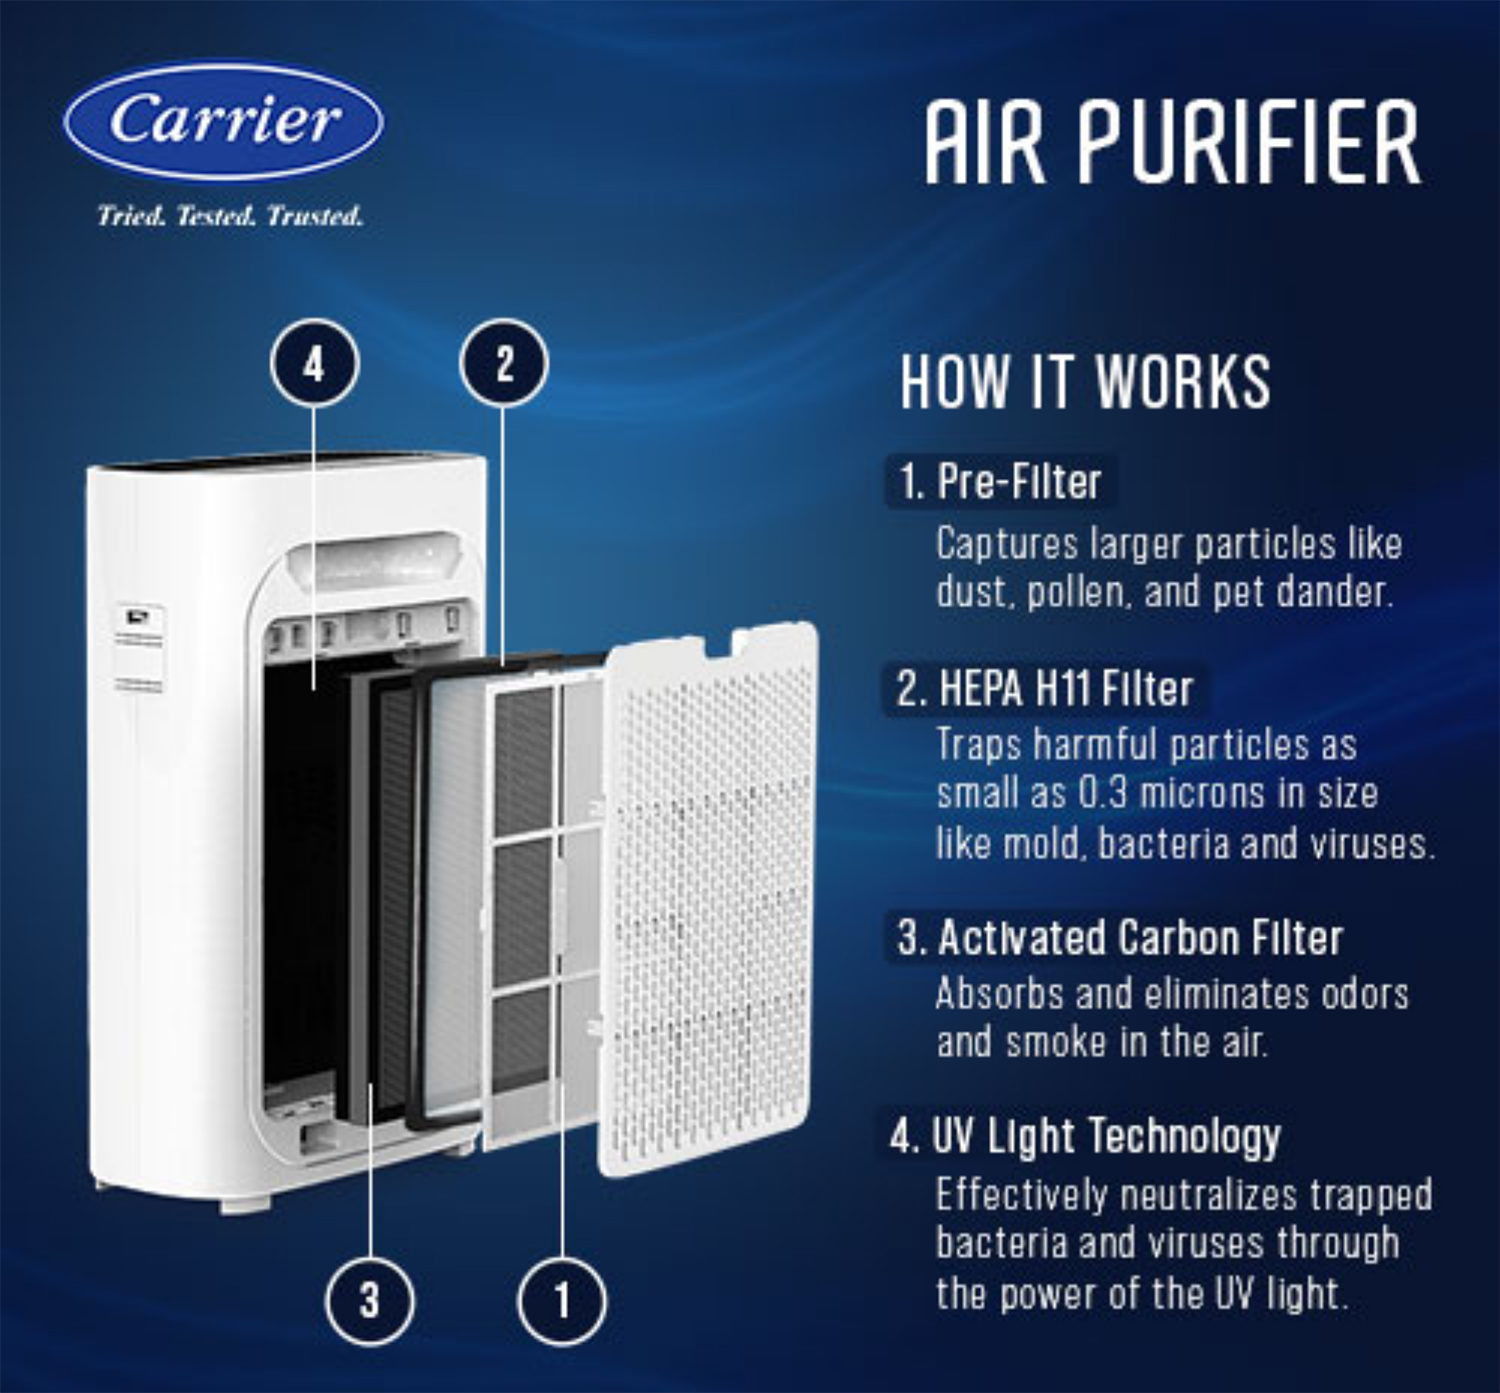 Carrier Air Purifier Household UltraSafe Technology - CAUN026LC1